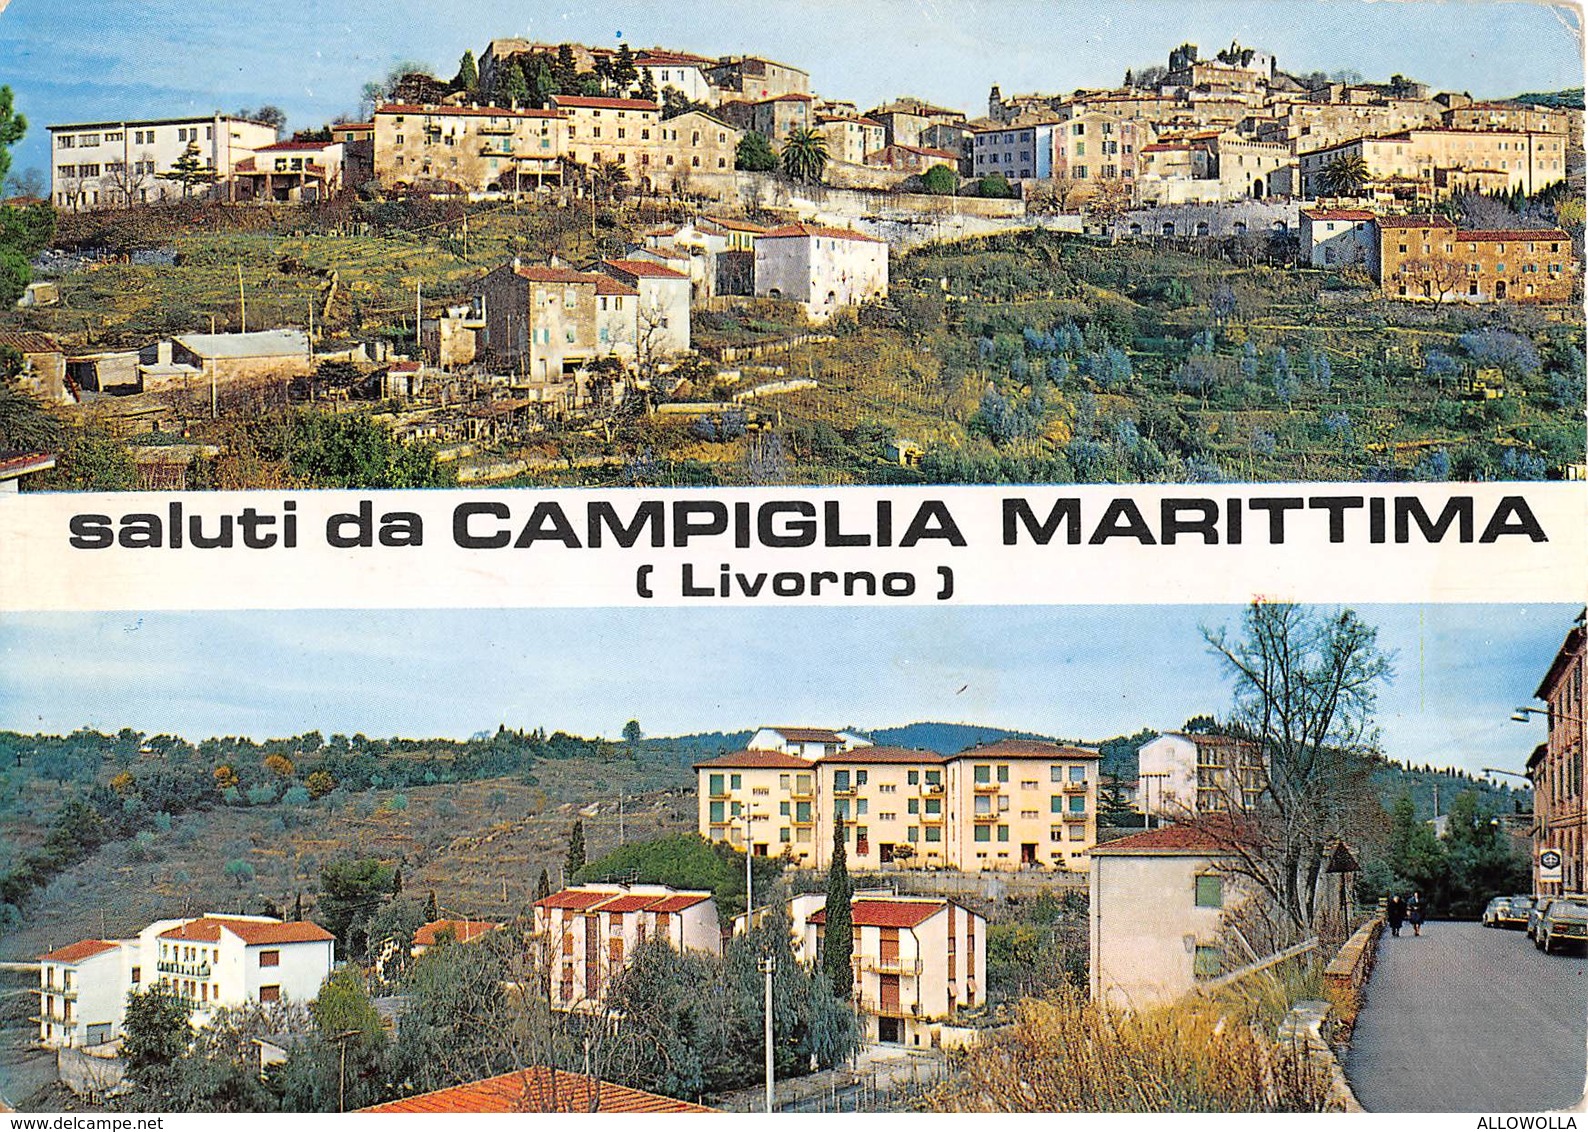 4946 " SALUTI DA CAMPIGLIA MARITTIMA(LIVORNO) "2 VEDUTE-INSEGNA PIAGGIO-CARTOLINA POSTALE ORIG. SPED.1974 - Greetings From...